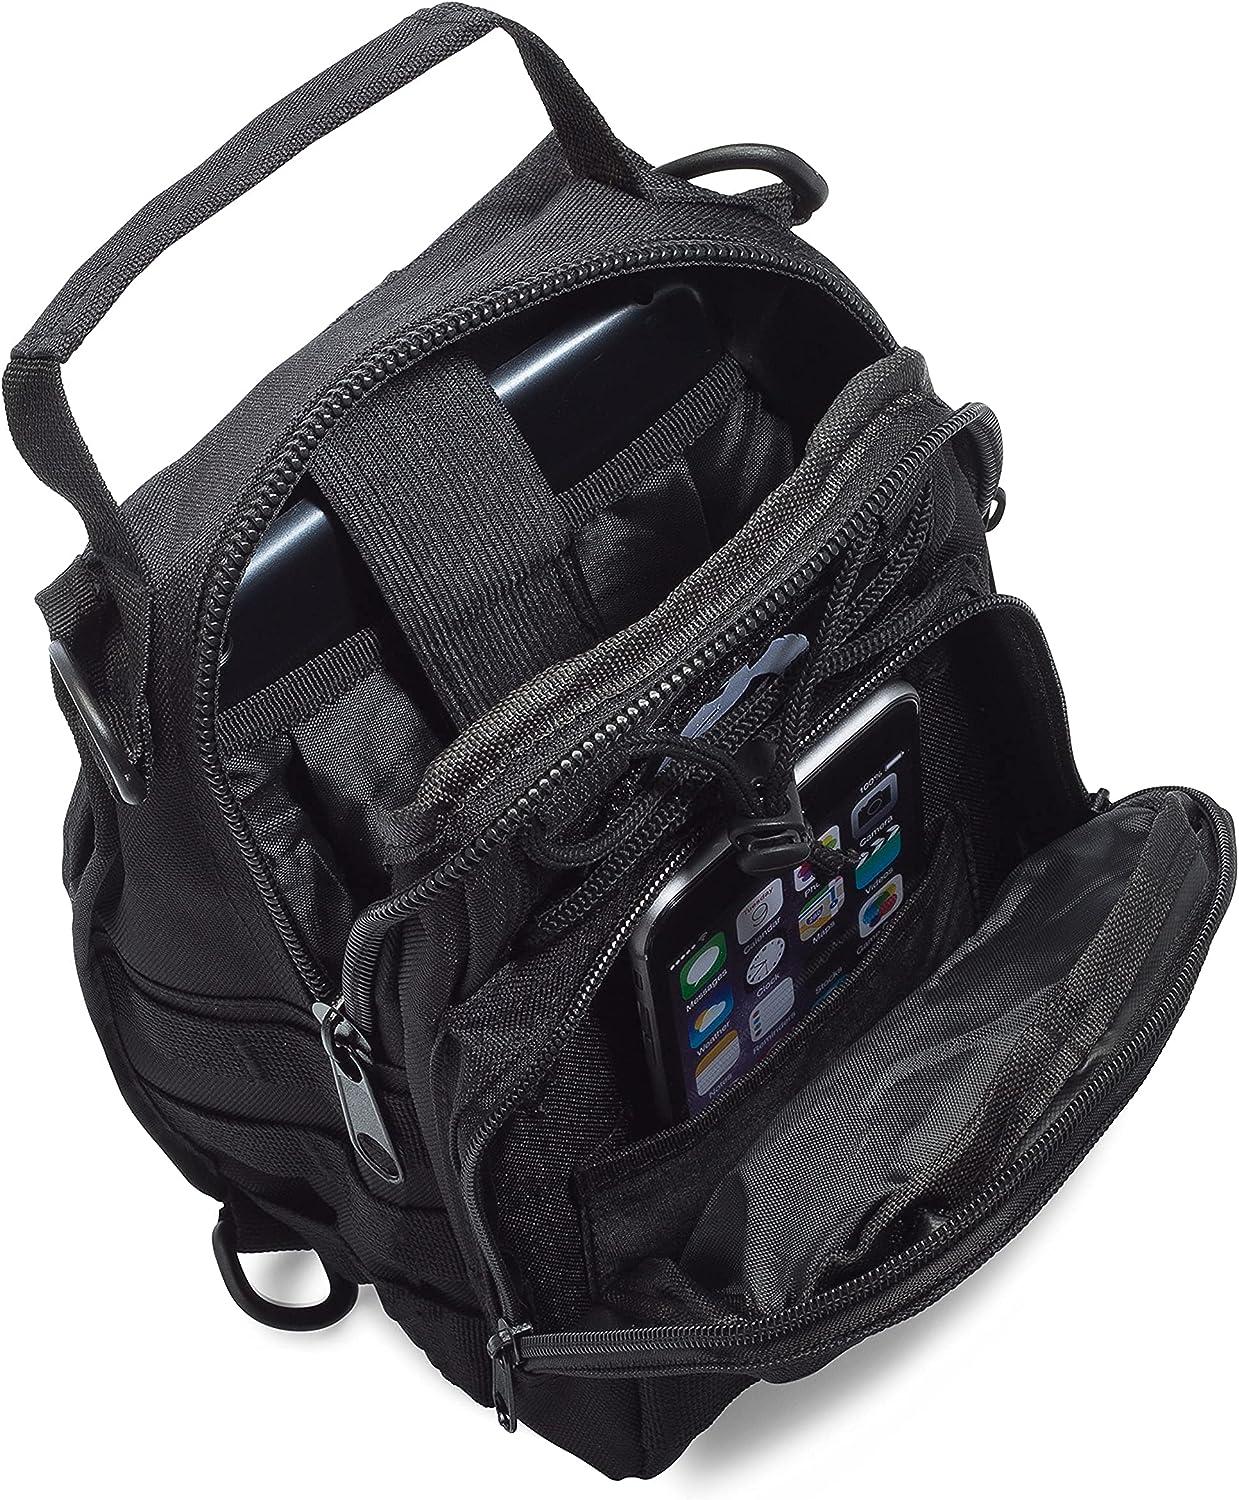 Mullet Dragon Tactical Sling Bag for Men Black EDC Small Backpack